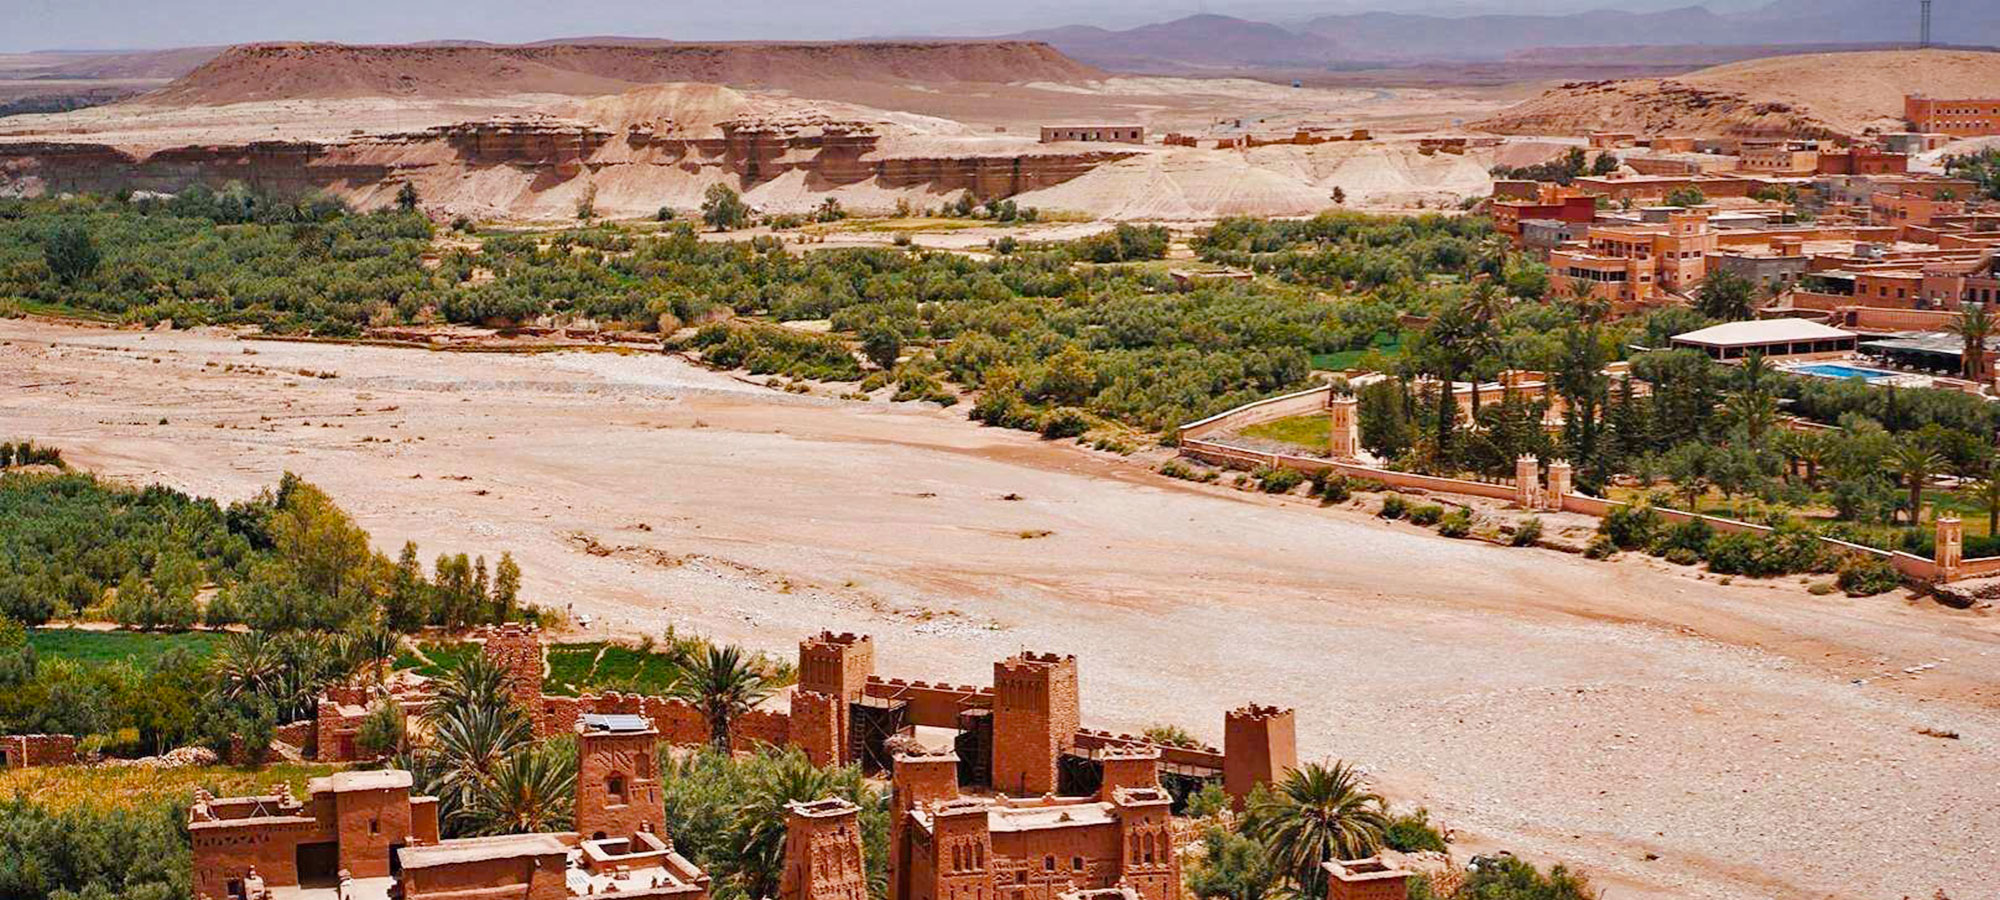 Day 2 : Merzouga desert – Rissani – Tazzarine – Agdz – Ouarzazate